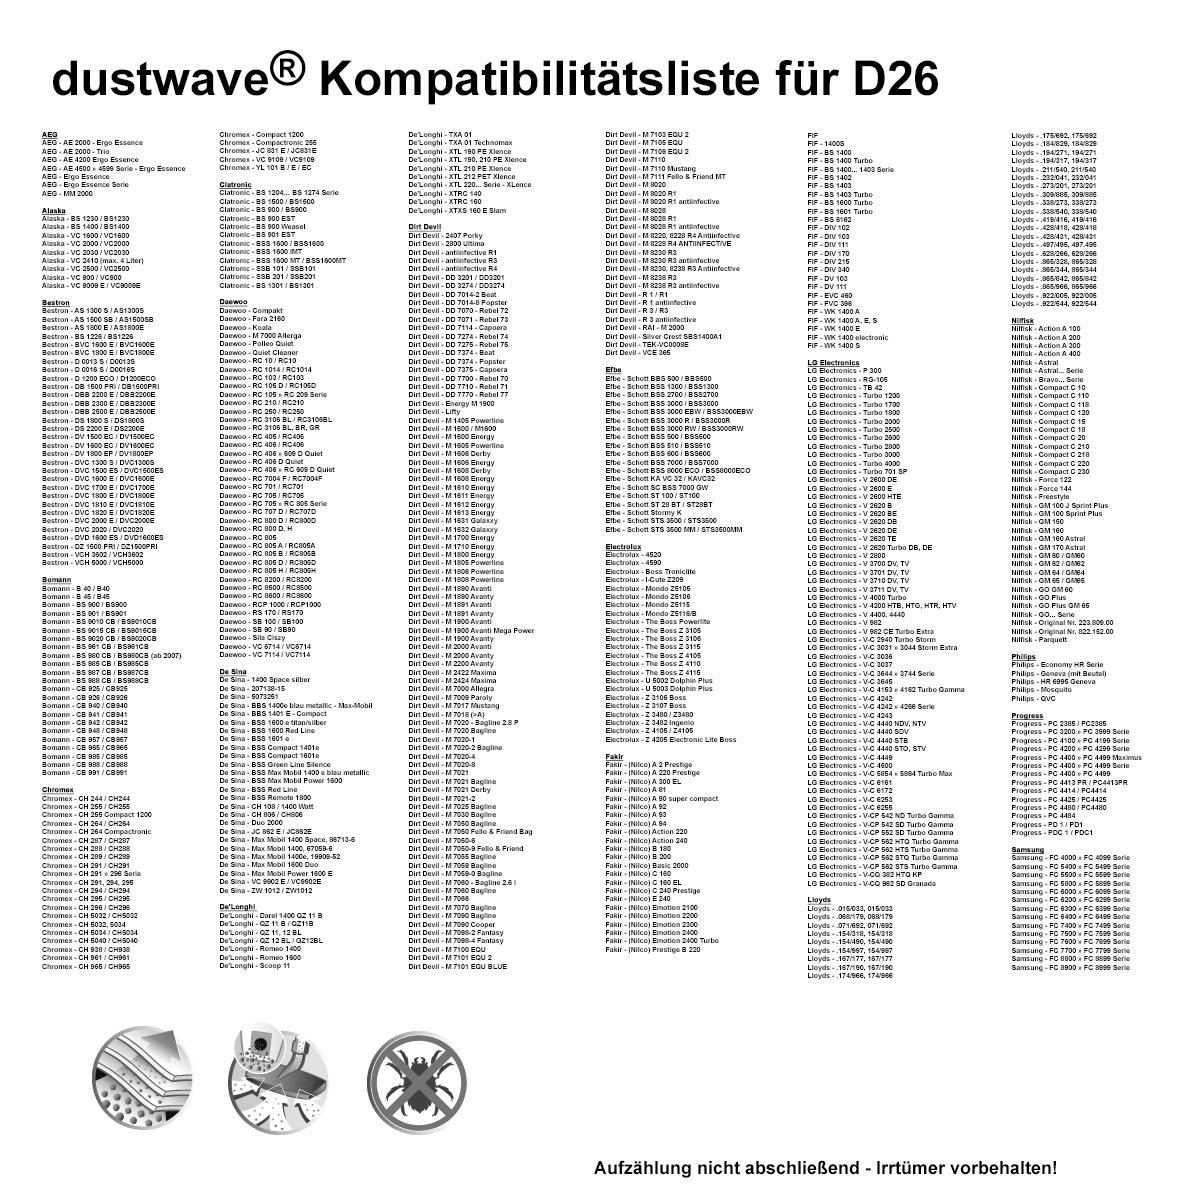 Dustwave® 1 Staubsaugerbeutel für AmazonBasics G51 - hocheffizient, mehrlagiges Mikrovlies mit Hygieneverschluss - Made in Germany